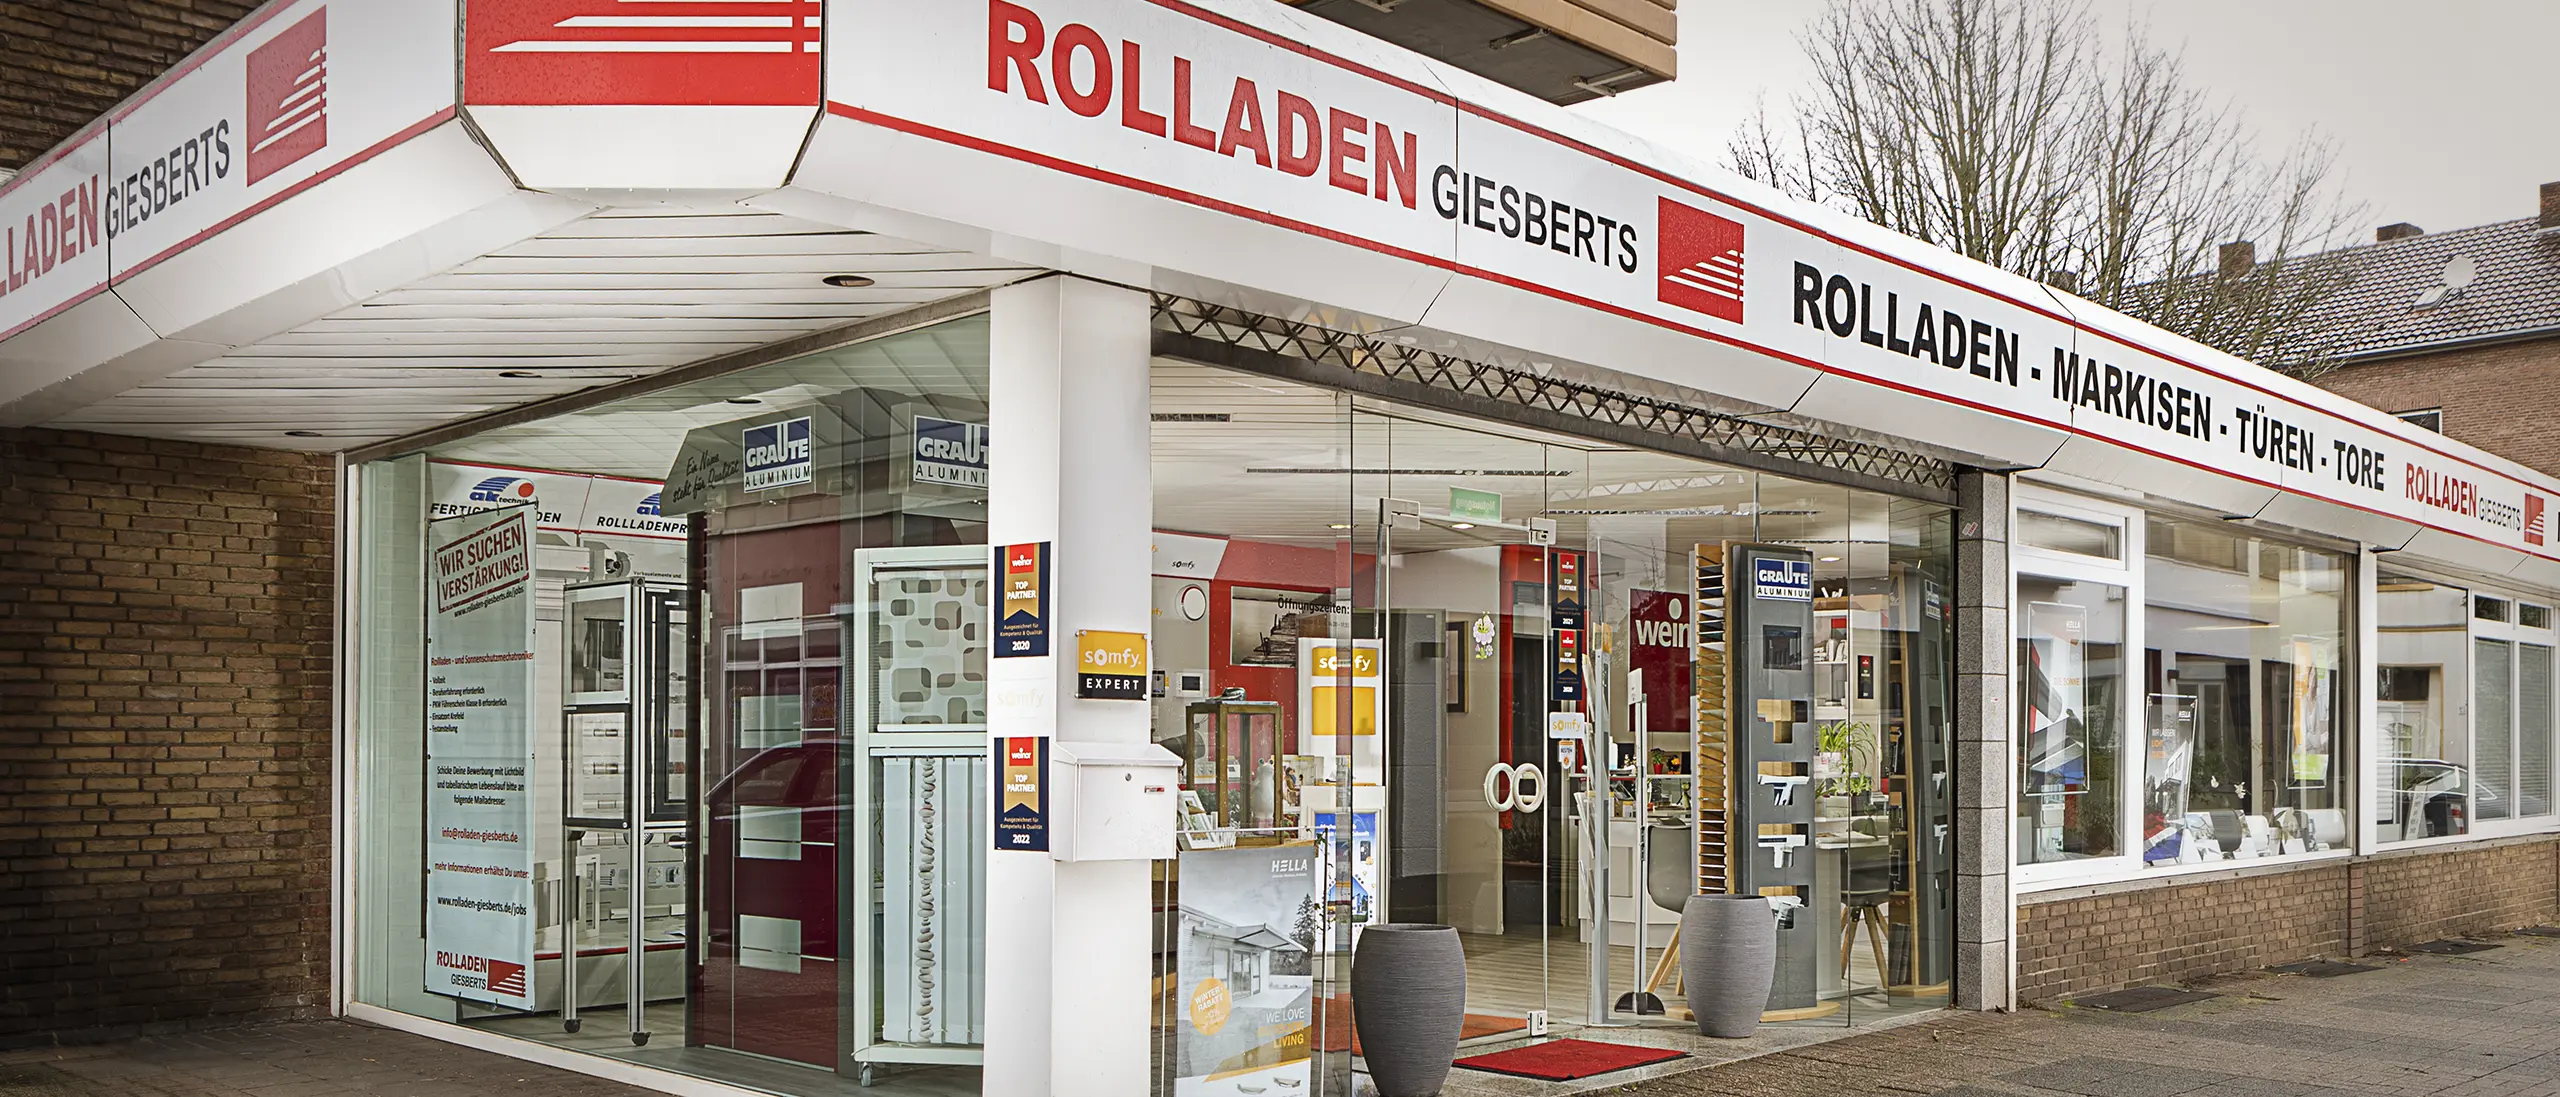 Rolladen Giesberts GmbH Arbeitsbereich